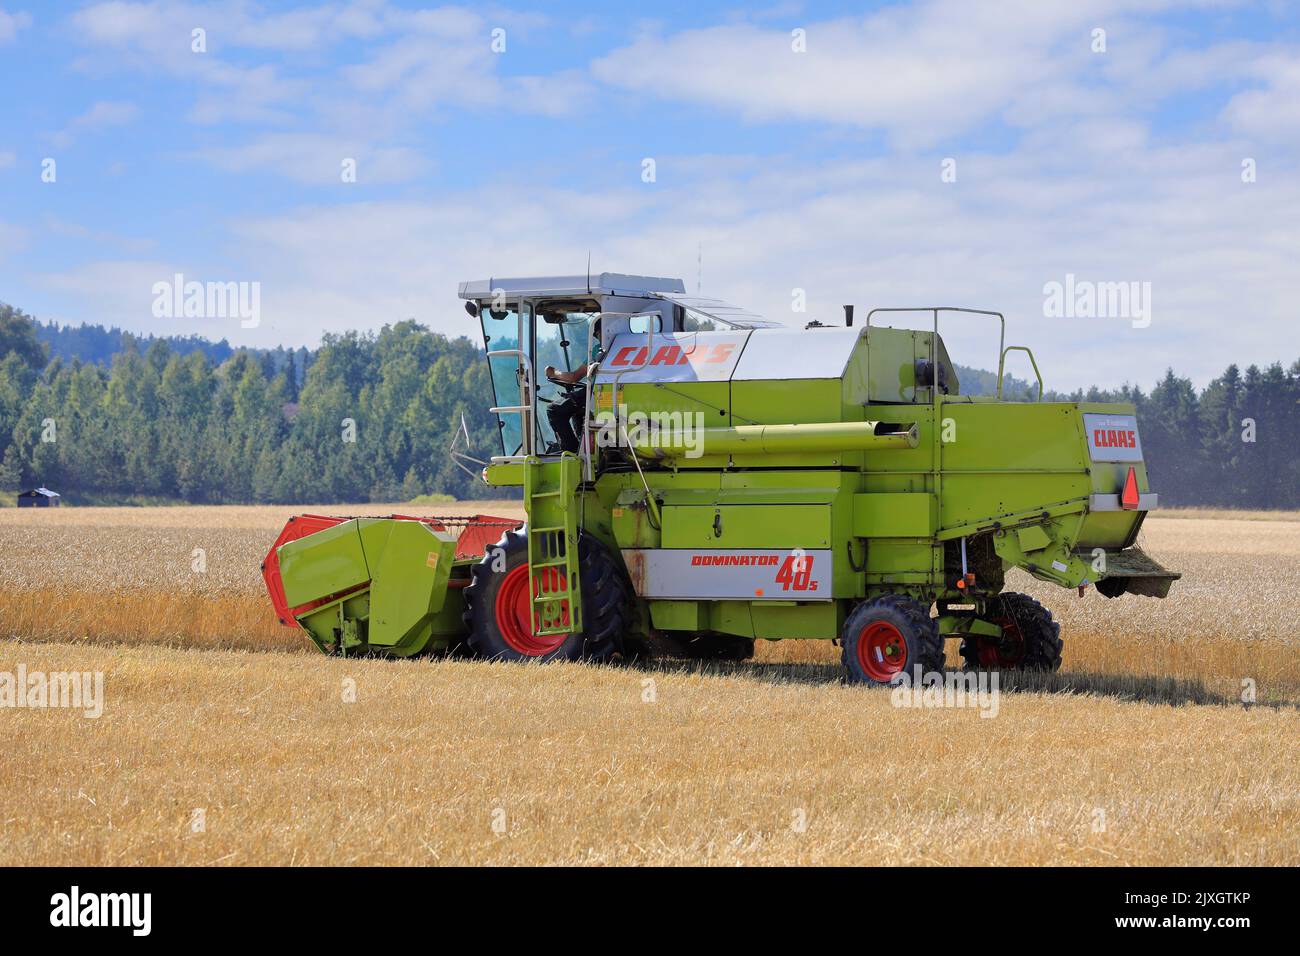 Agriculteur moissonnant un champ de blé mûr avec la moissonneuse-batteuse Claas Dominator 48S par un beau jour d'août. Salo, Finlande. 27 août 2022. Banque D'Images